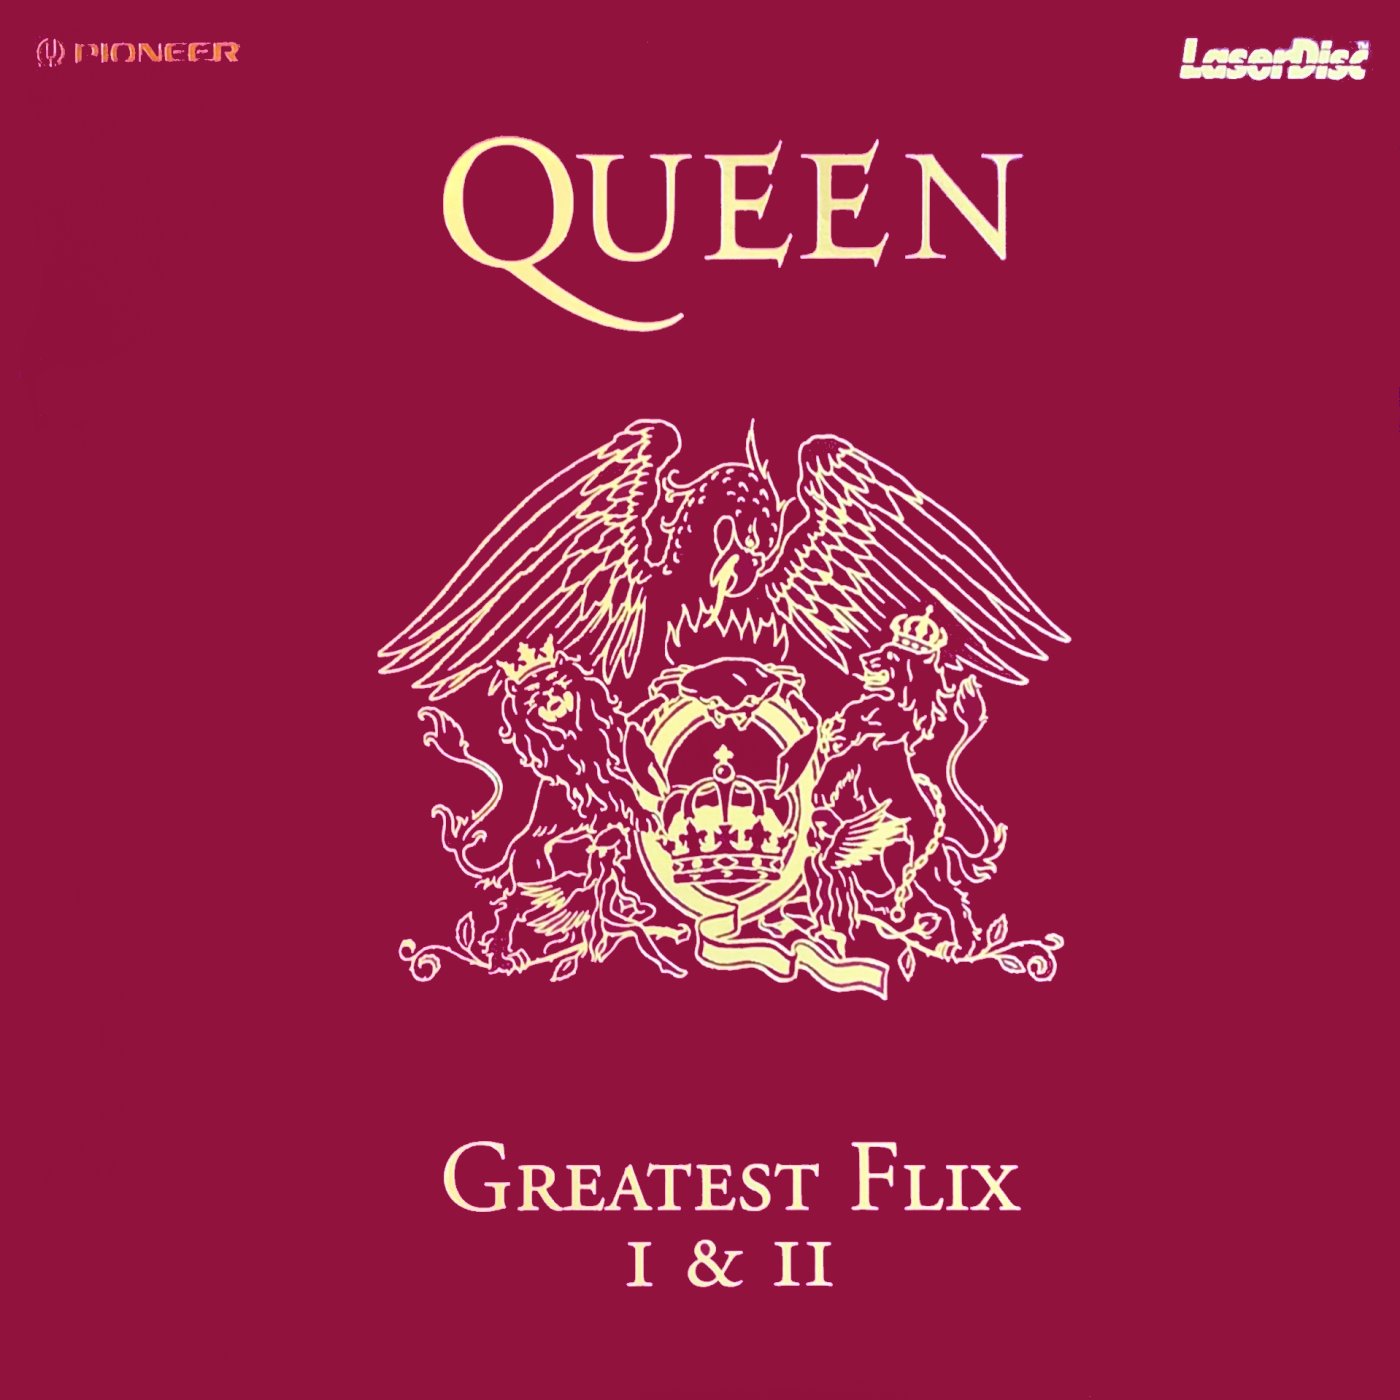 Cover - Queen's Greatest Flix.jpg